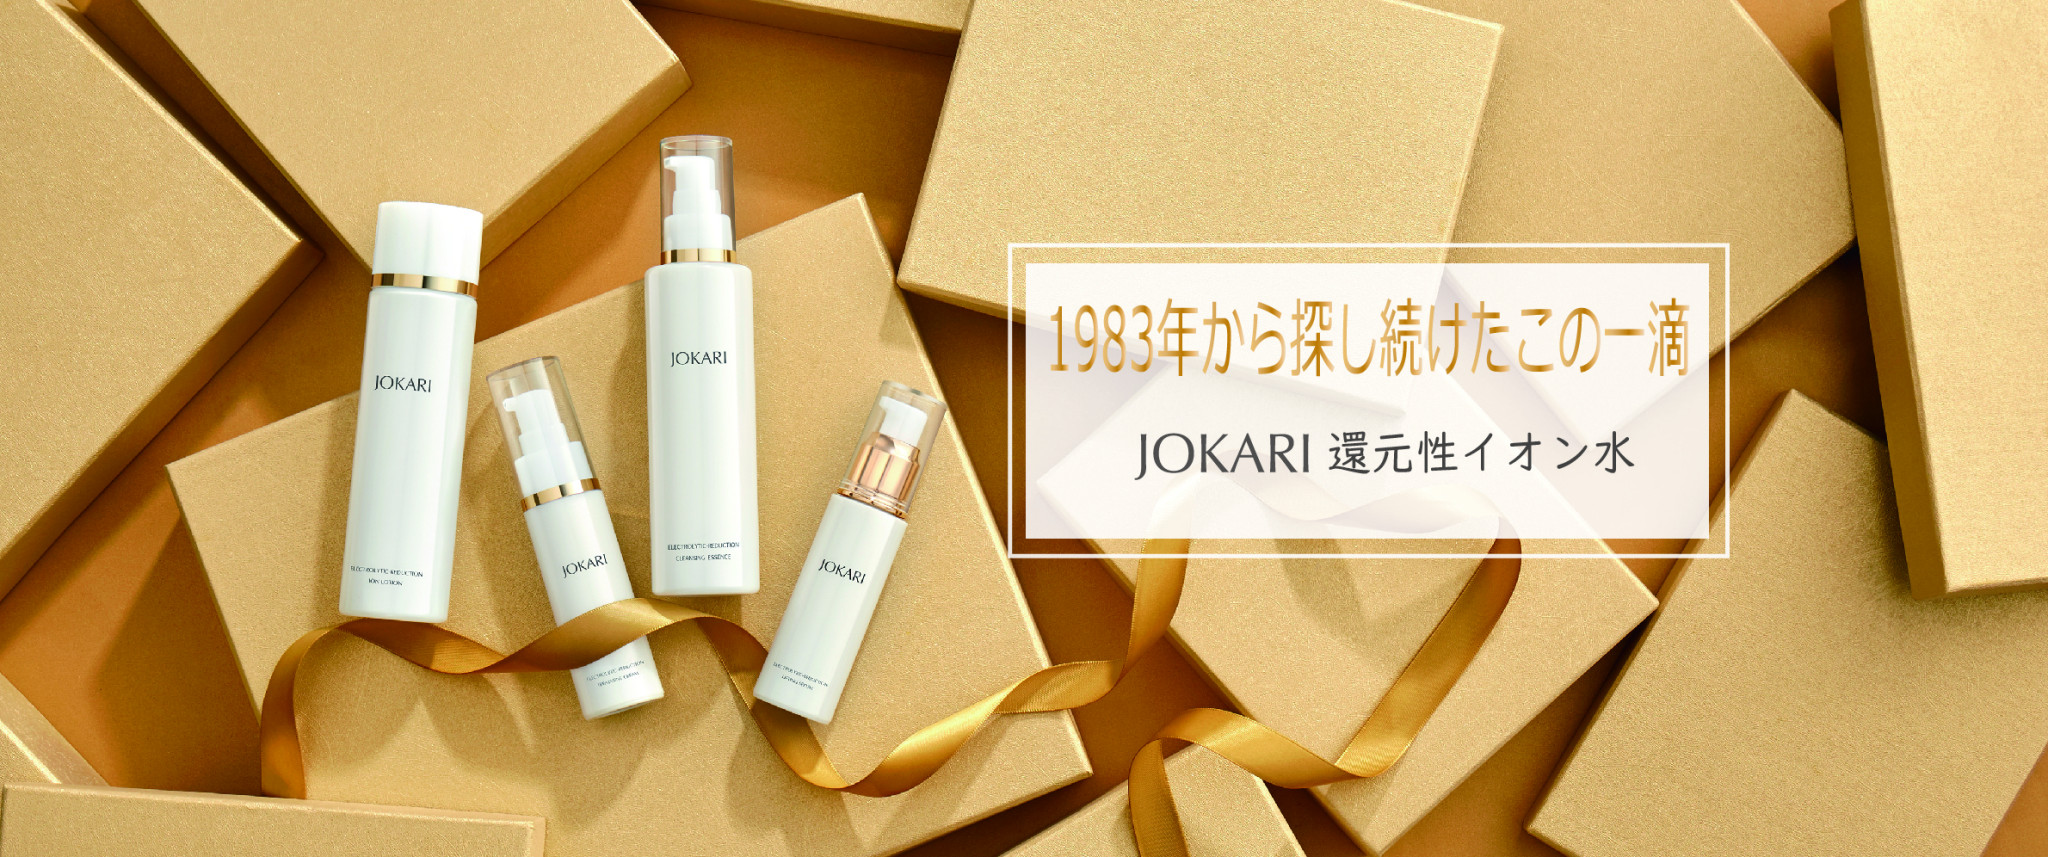 JOKARIジョカリ化粧品公式サイト | コンセプト